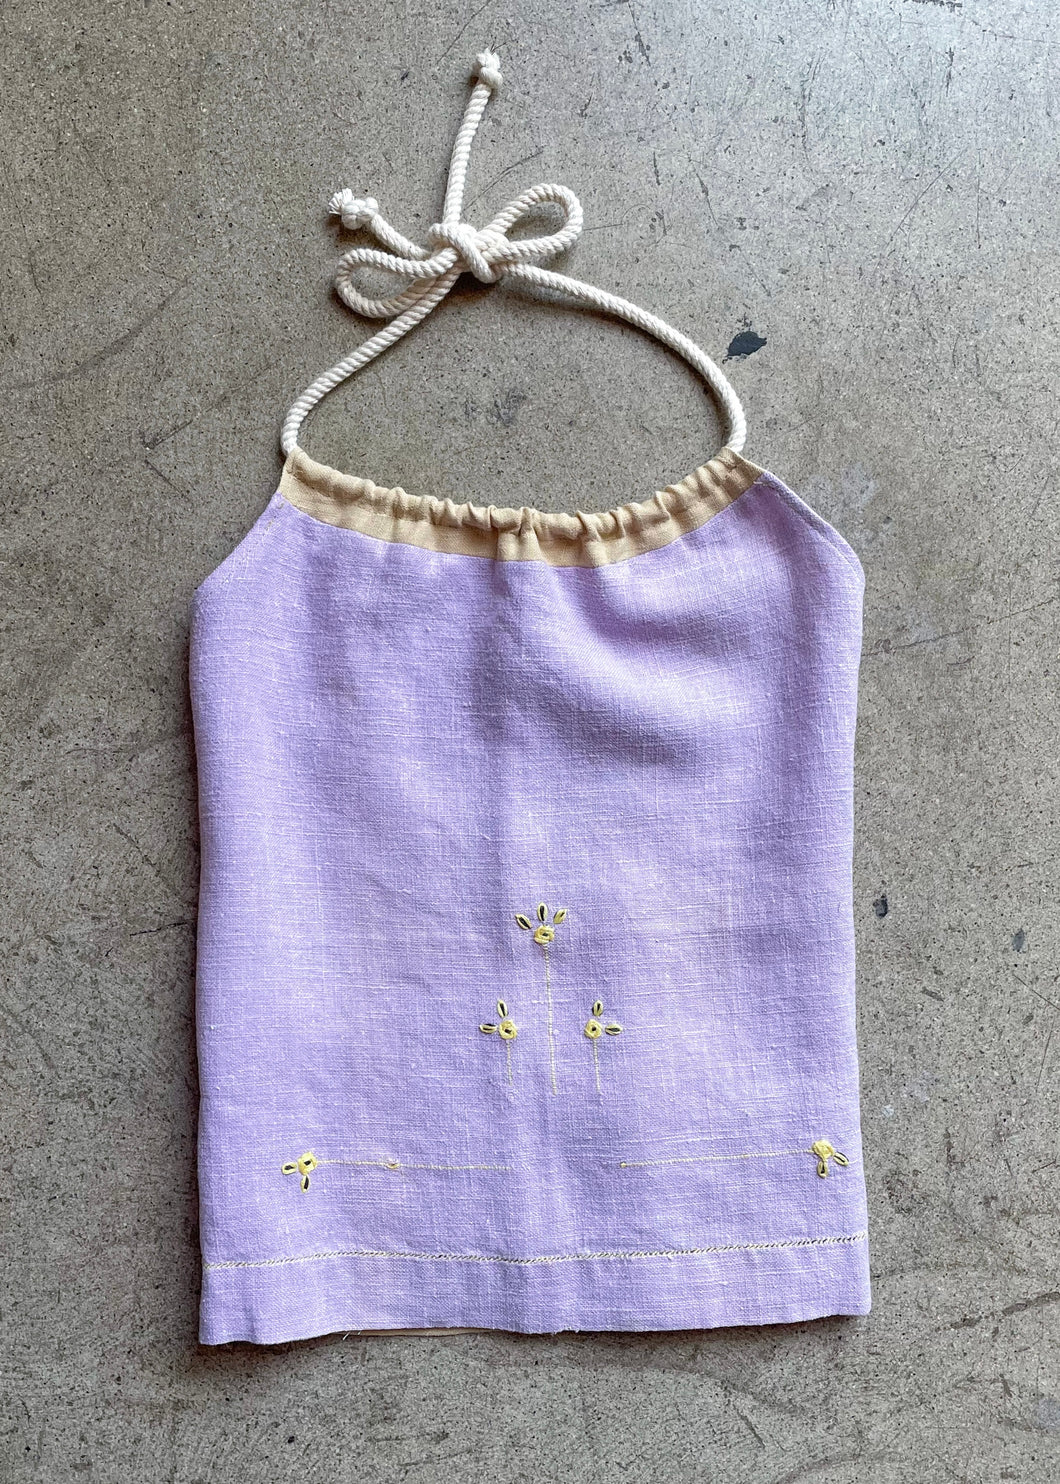 Antique Pastel Purple Linen Halter Top XL